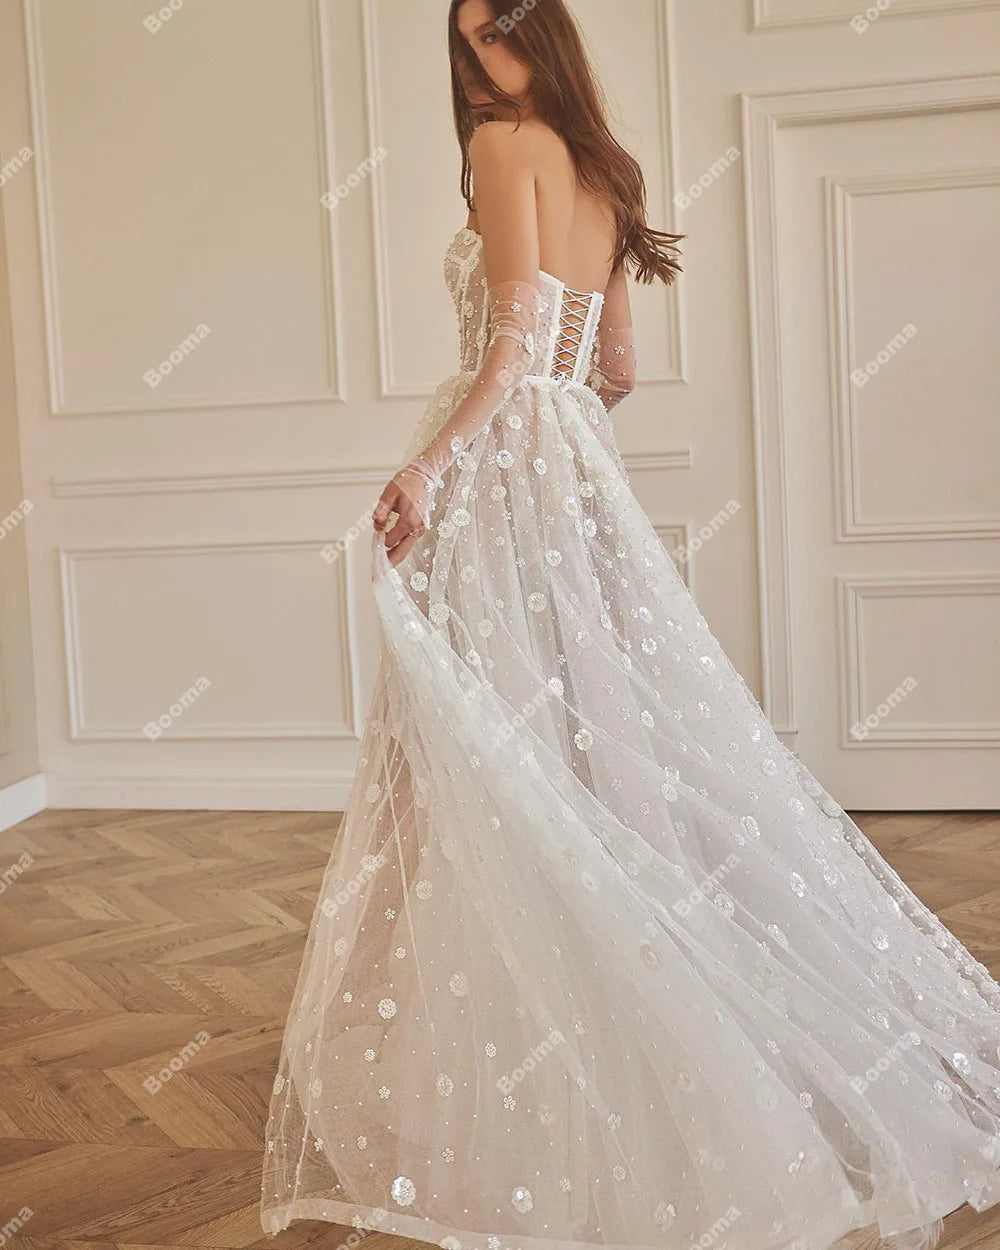 Boho Romantis A-Line Wedding Dresses Sweetheart Sequins Flowers Tulle Brides Party Gowns Leg Slit Lace Up Long Bridal Gaun